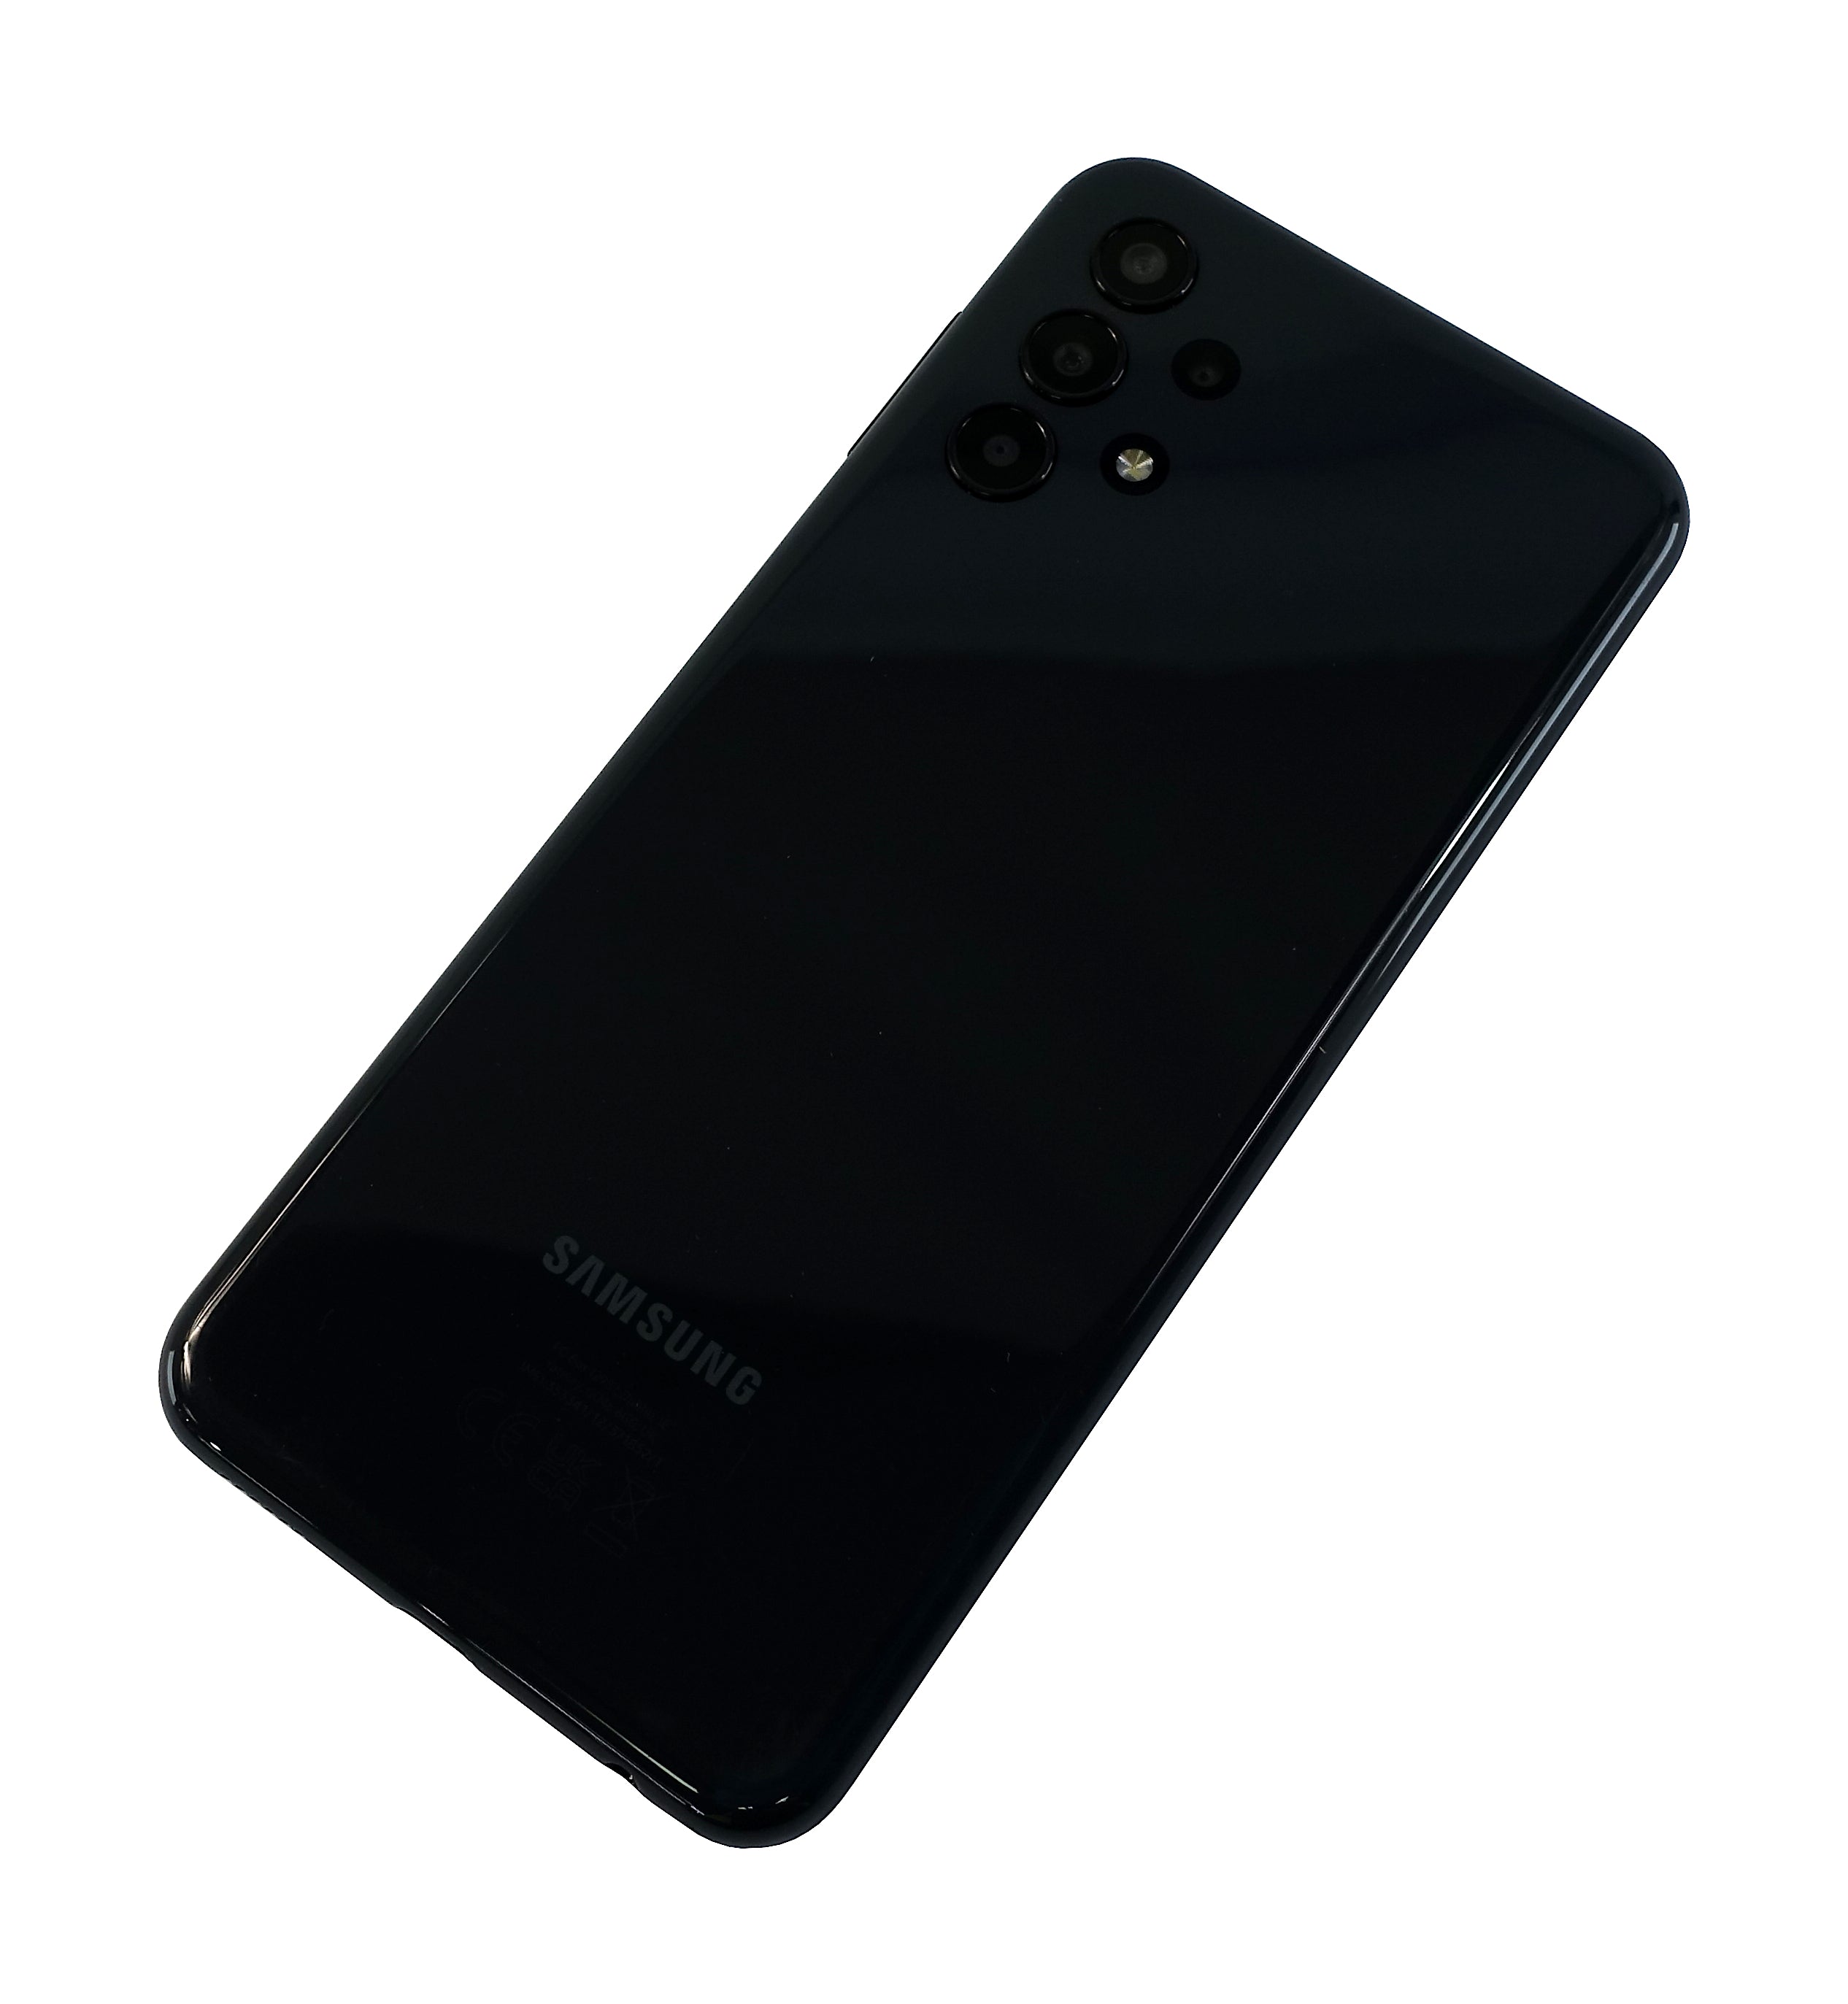 Samsung Galaxy A13 Smartphone, 64GB, Network Unlocked, Black, SM-A137F/DSN